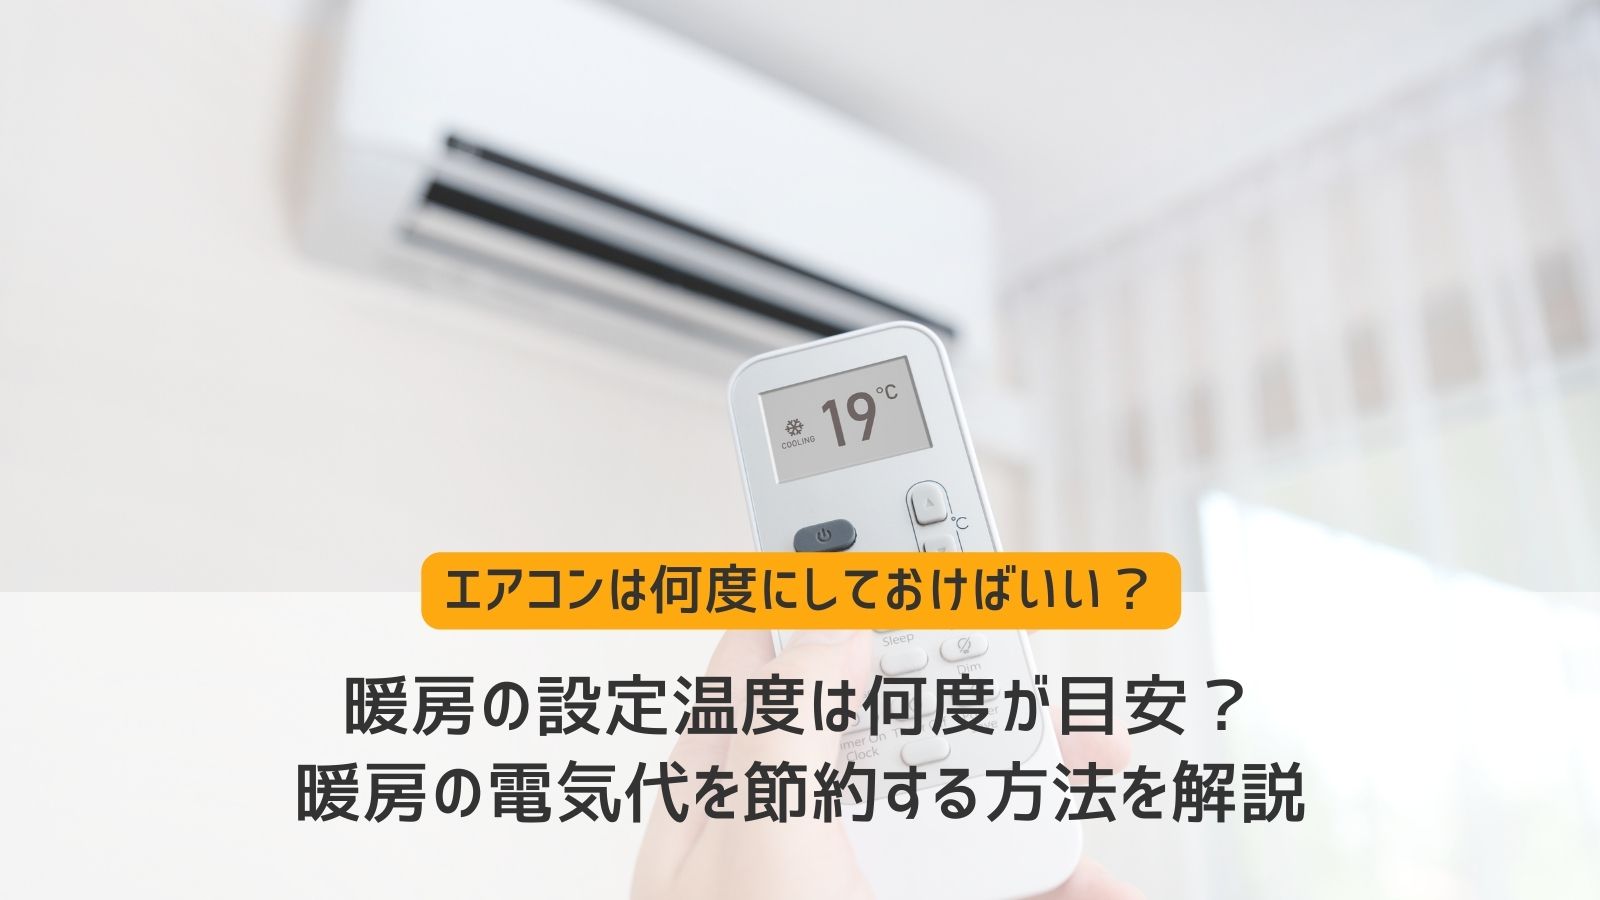 暖房設定温度